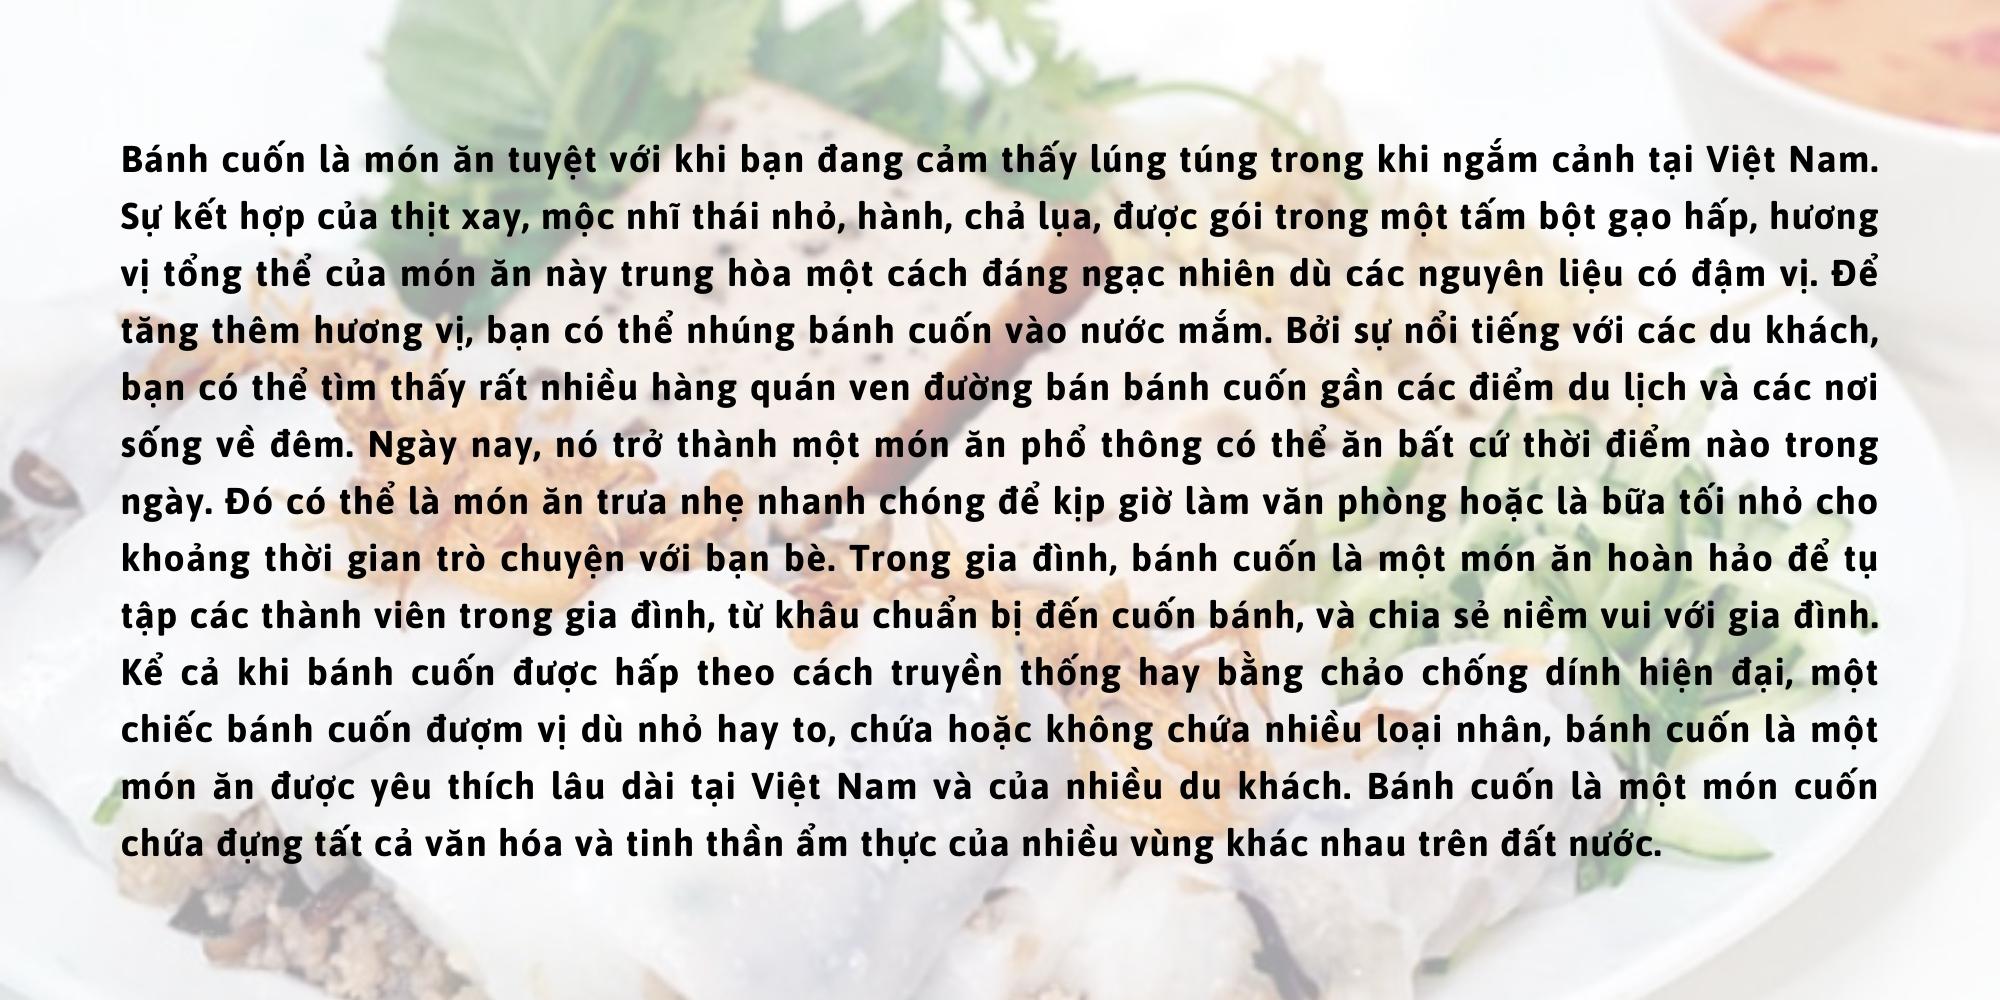 Giới thiệu món bánh cuốn (dịch tiếng Việt)